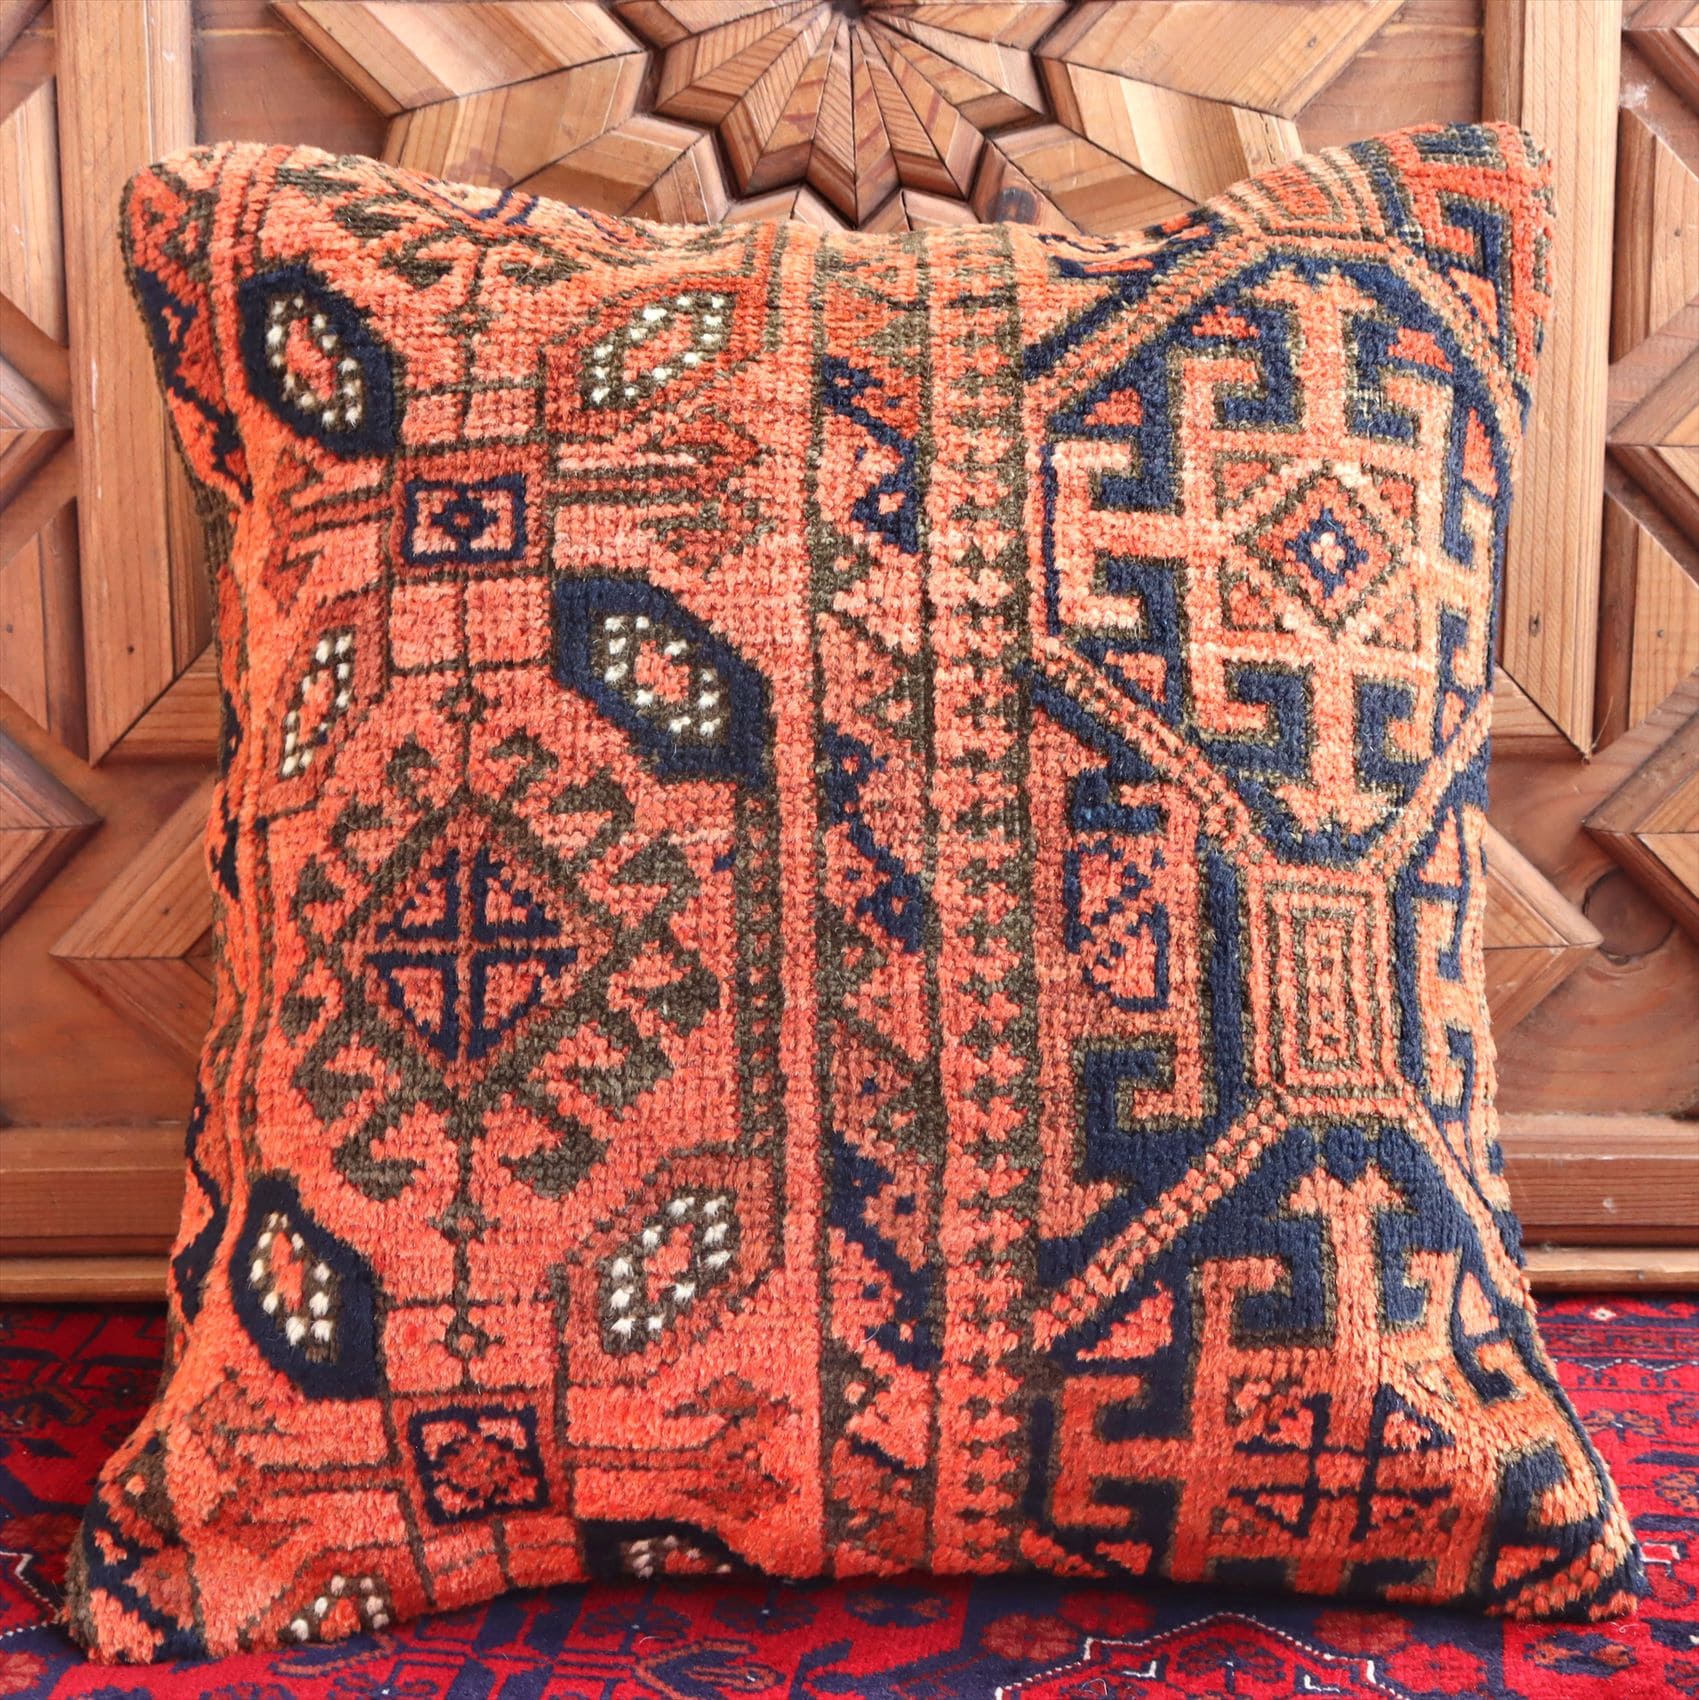 クッションカバー ヴィンテージ パイル織り 絨毯 40cmサイズ バルケスィル オレンジ レッド